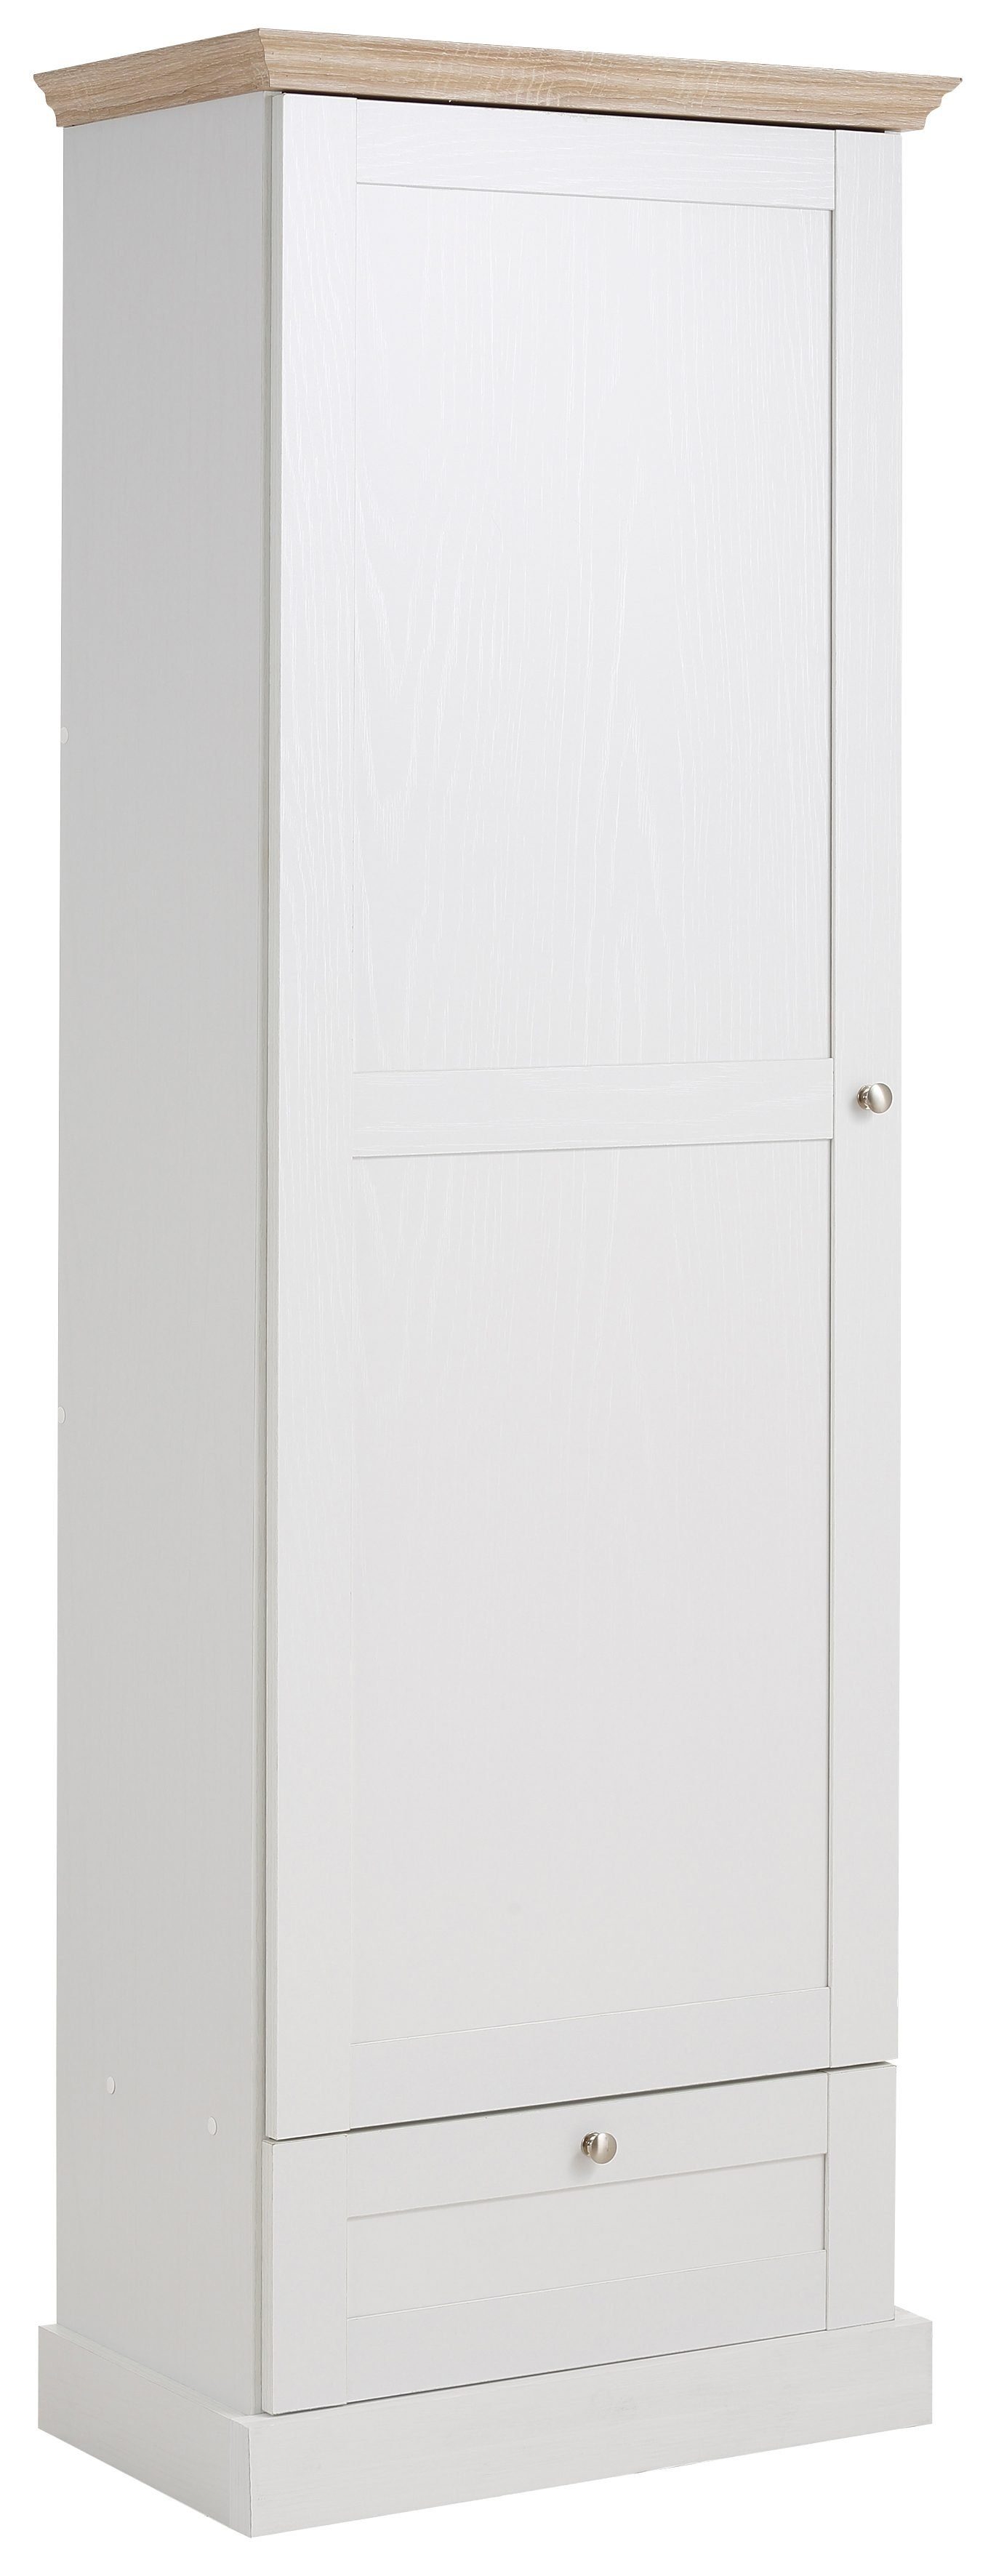 Home affaire Garderobenschrank Binz mit schöner Holzoptik, mit vielen Stauraummöglichkeiten, Höhe 180 cm weiß/eichefarben | Garderobenschränke